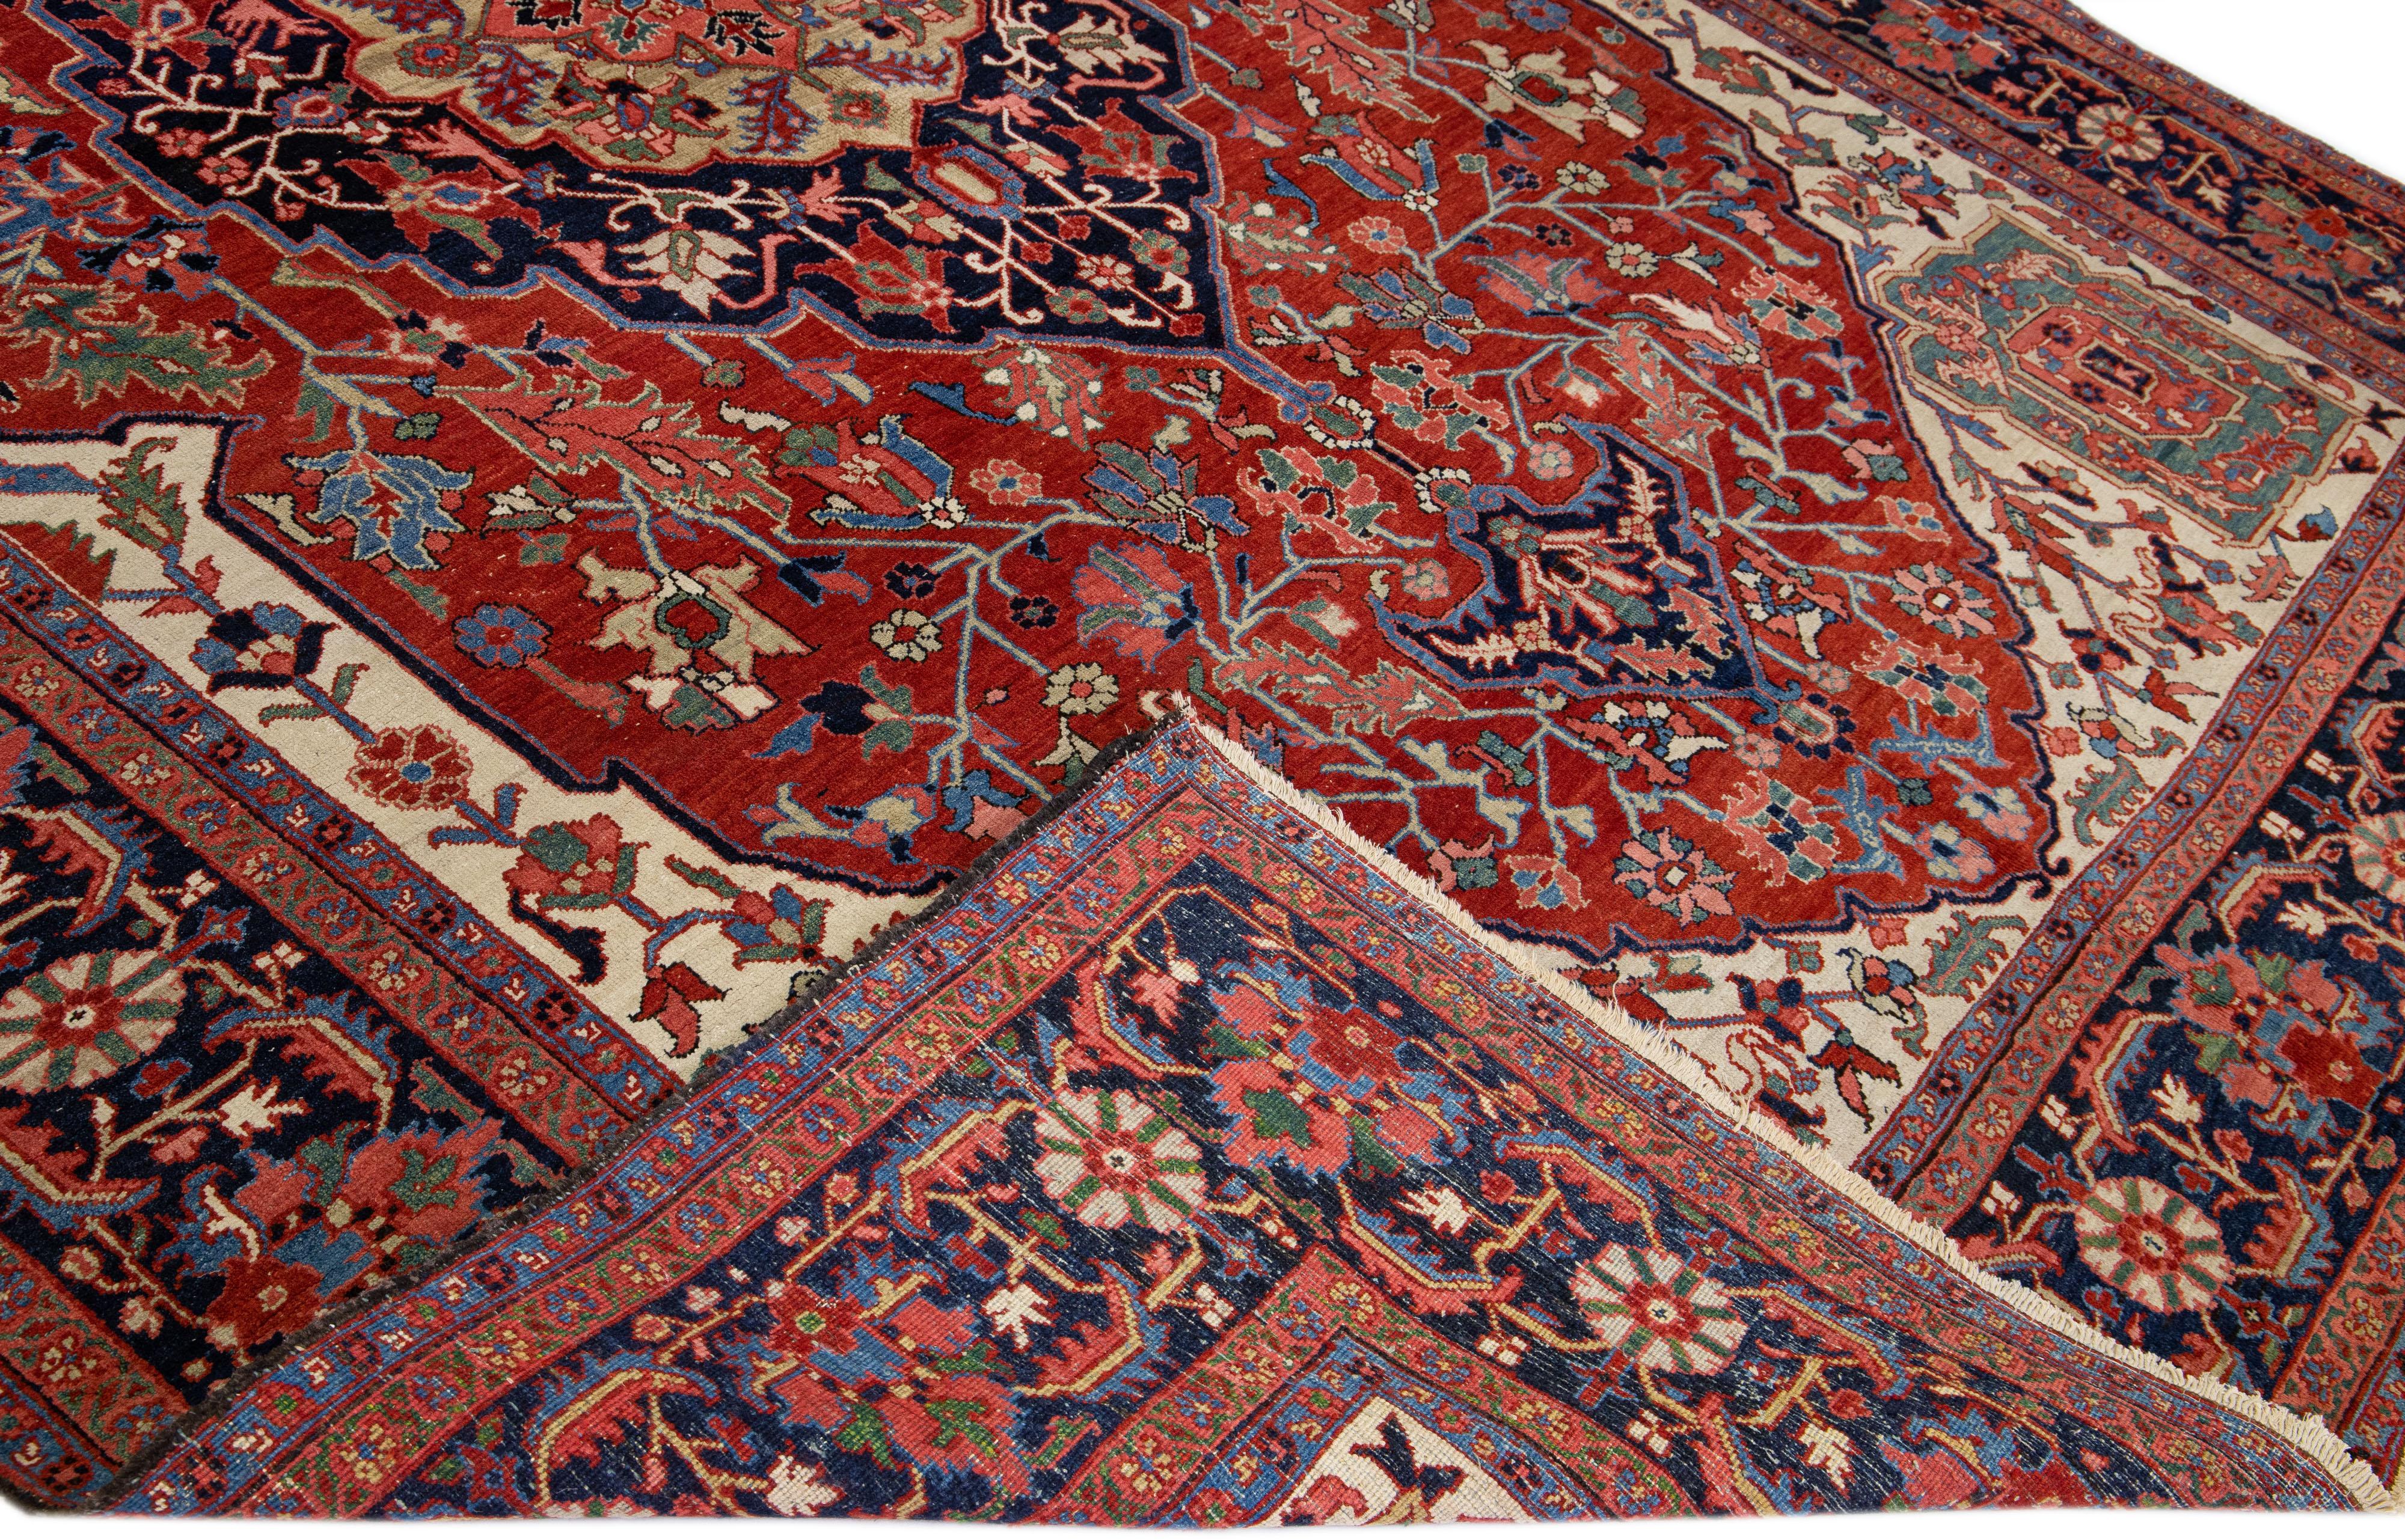 Schöner antiker persischer Heriz-Handknüpfteppich aus Wolle mit rotem Feld. Dieser Heriz-Teppich hat einen marineblauen Rahmen und mehrfarbige Akzente in einem prächtigen geometrischen Medaillon-Blumenmuster.

Dieser Teppich misst: 9'9